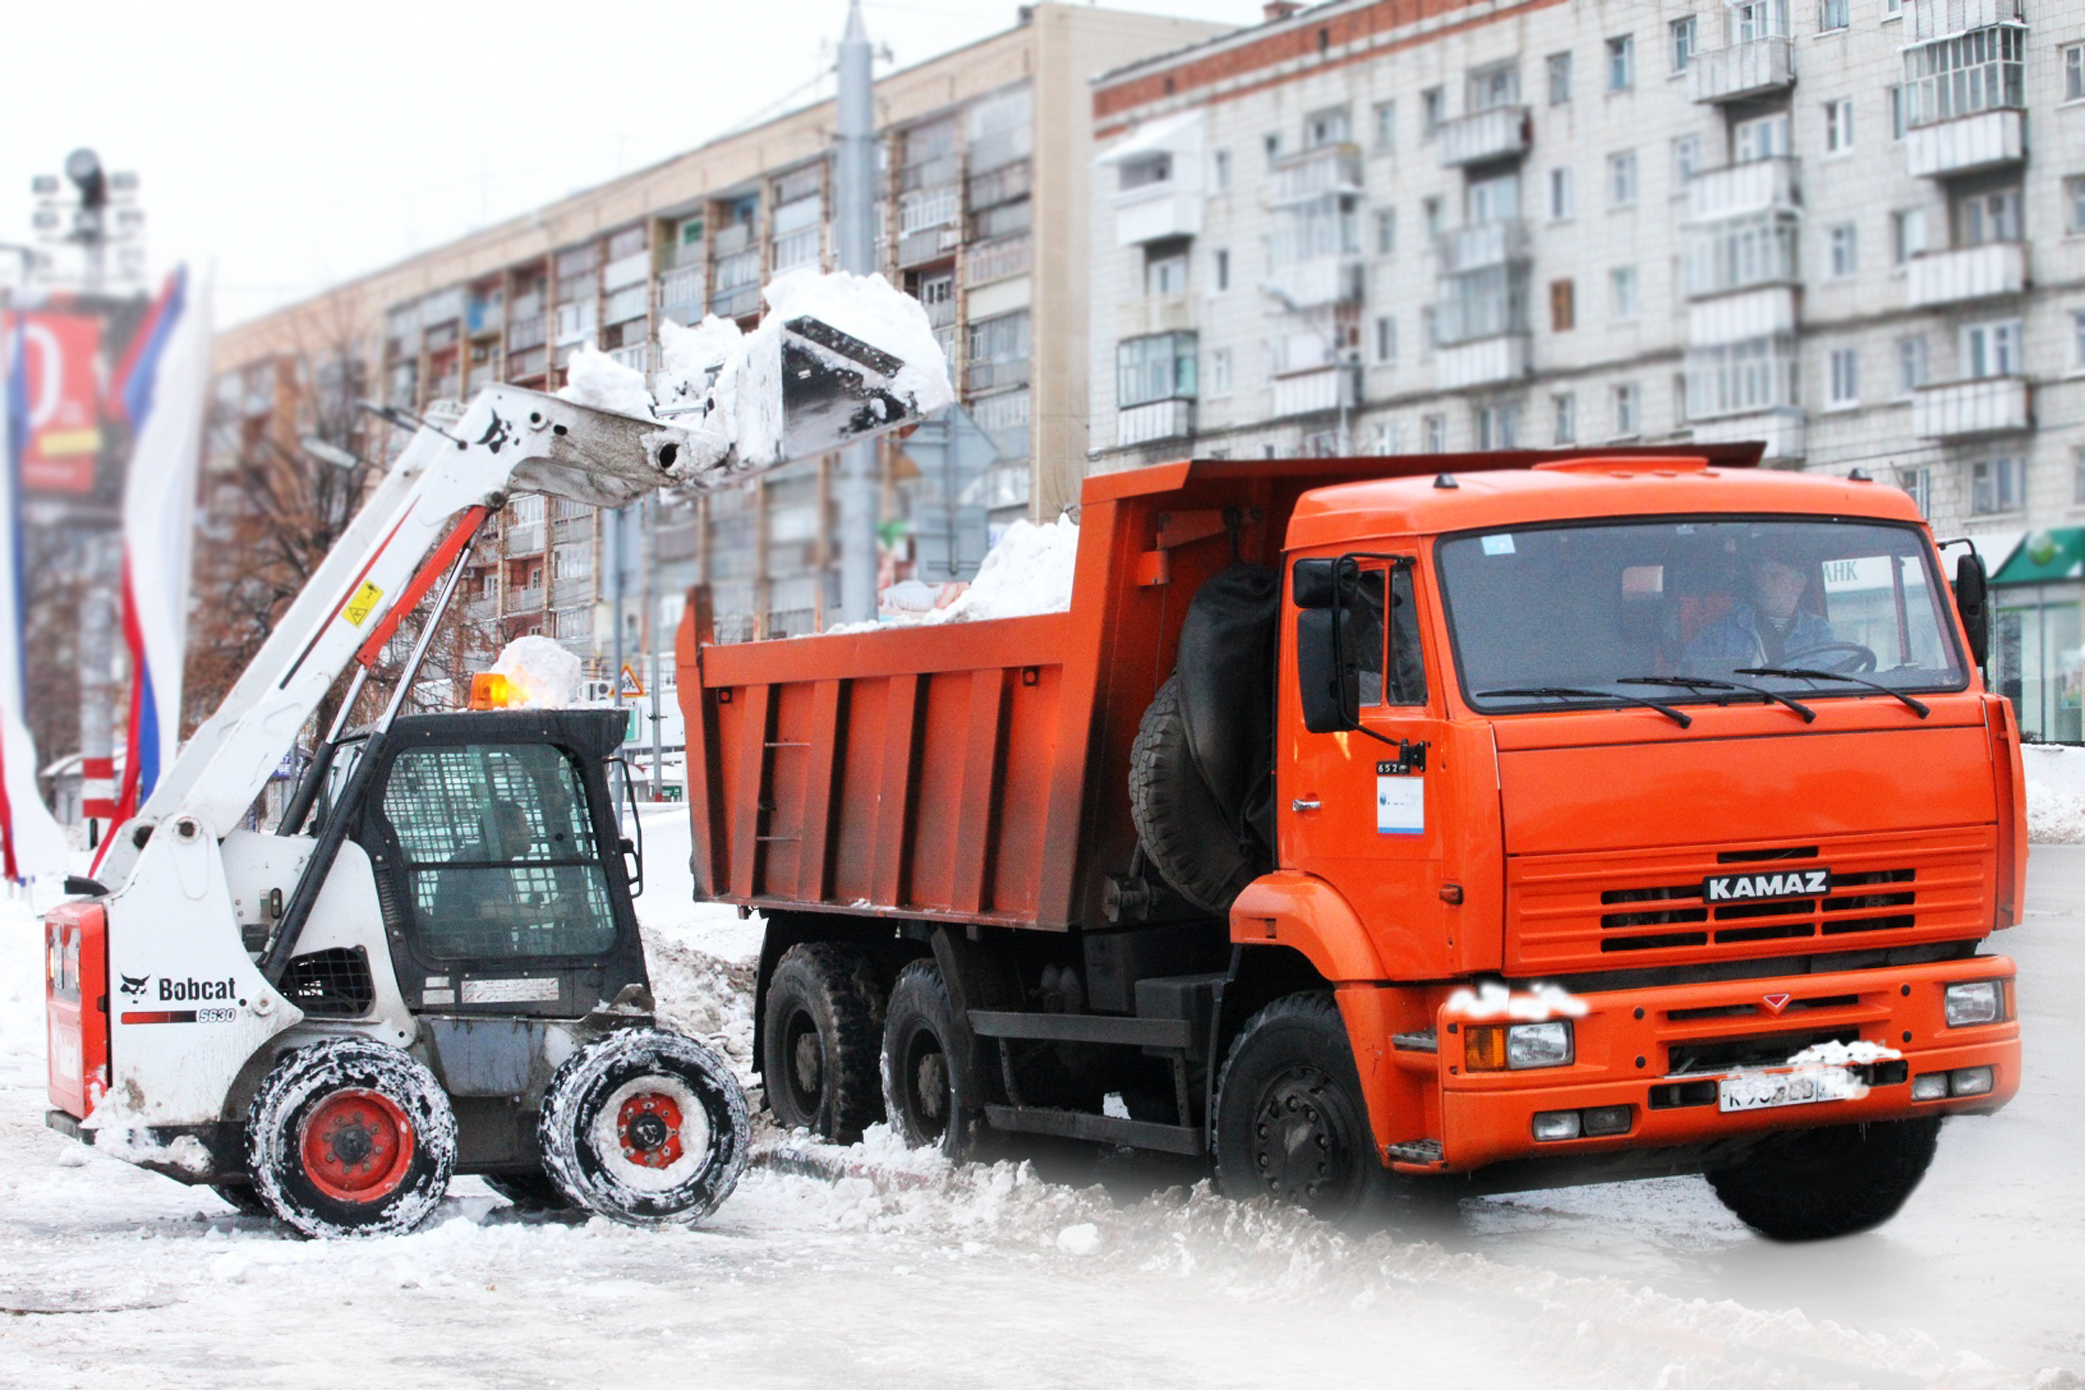 Сохранение окружающей среды и общественное благополучие: Значимость регулярного удаления мусора и снега